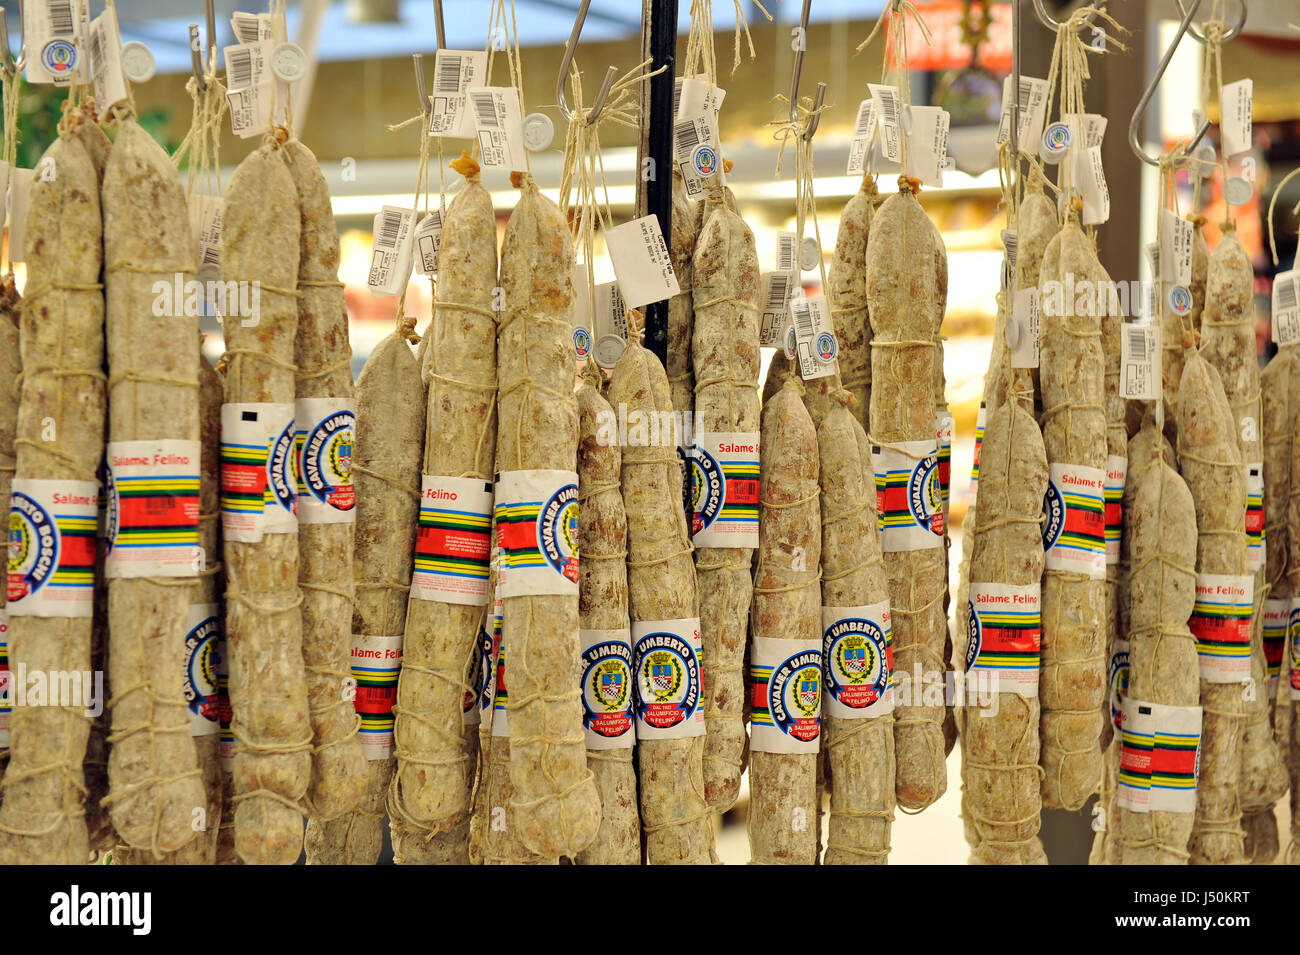 salami in a shop, Parma, Emilia Romagna, Italy, Europe, Italian food Stock Photo